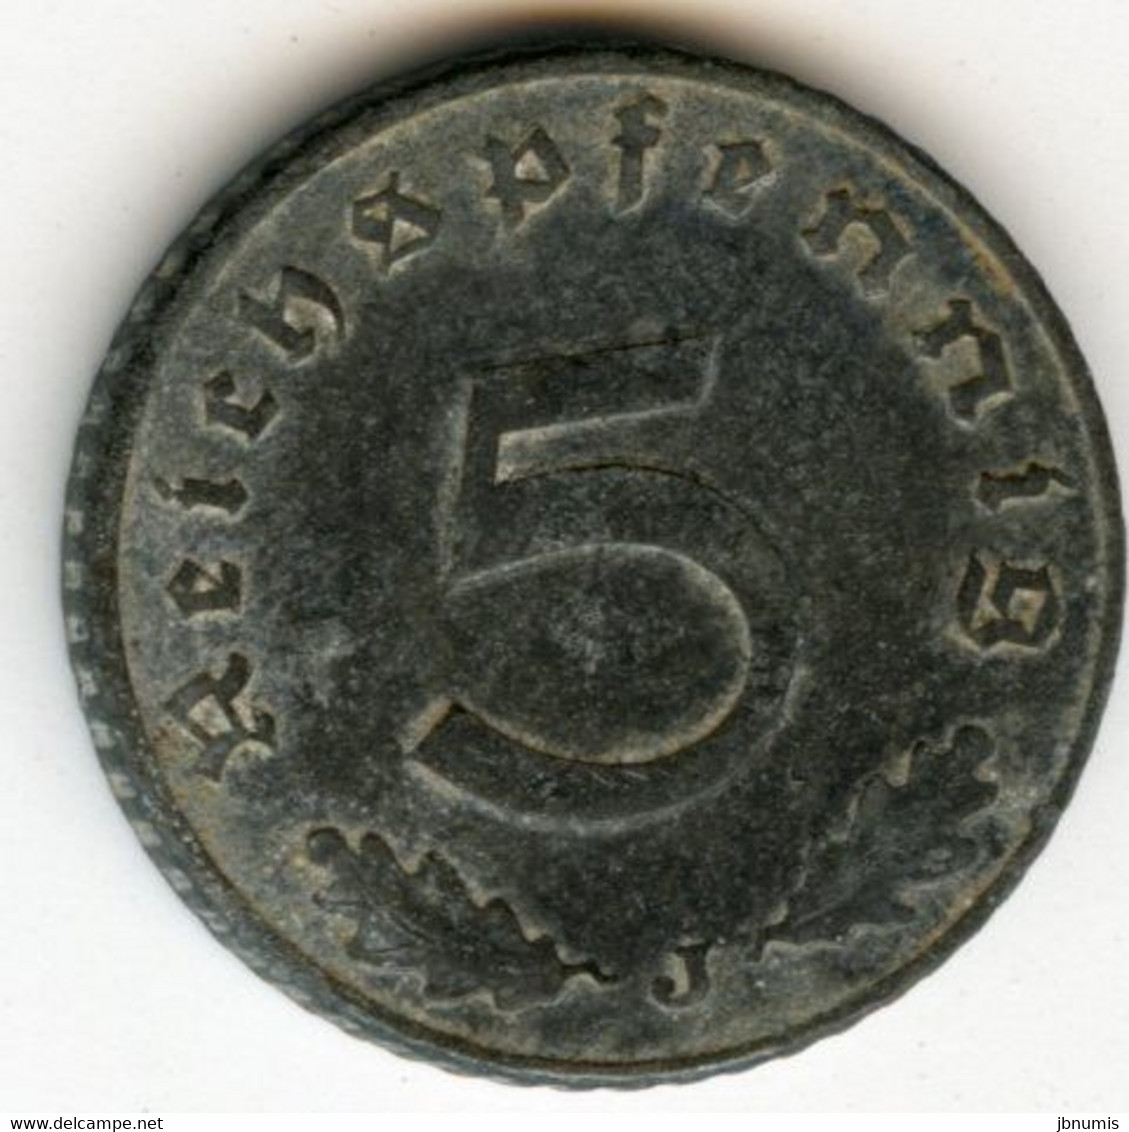 Allemagne Germany 5 Reichspfennig 1941 J J 370 KM 100 - 5 Reichspfennig